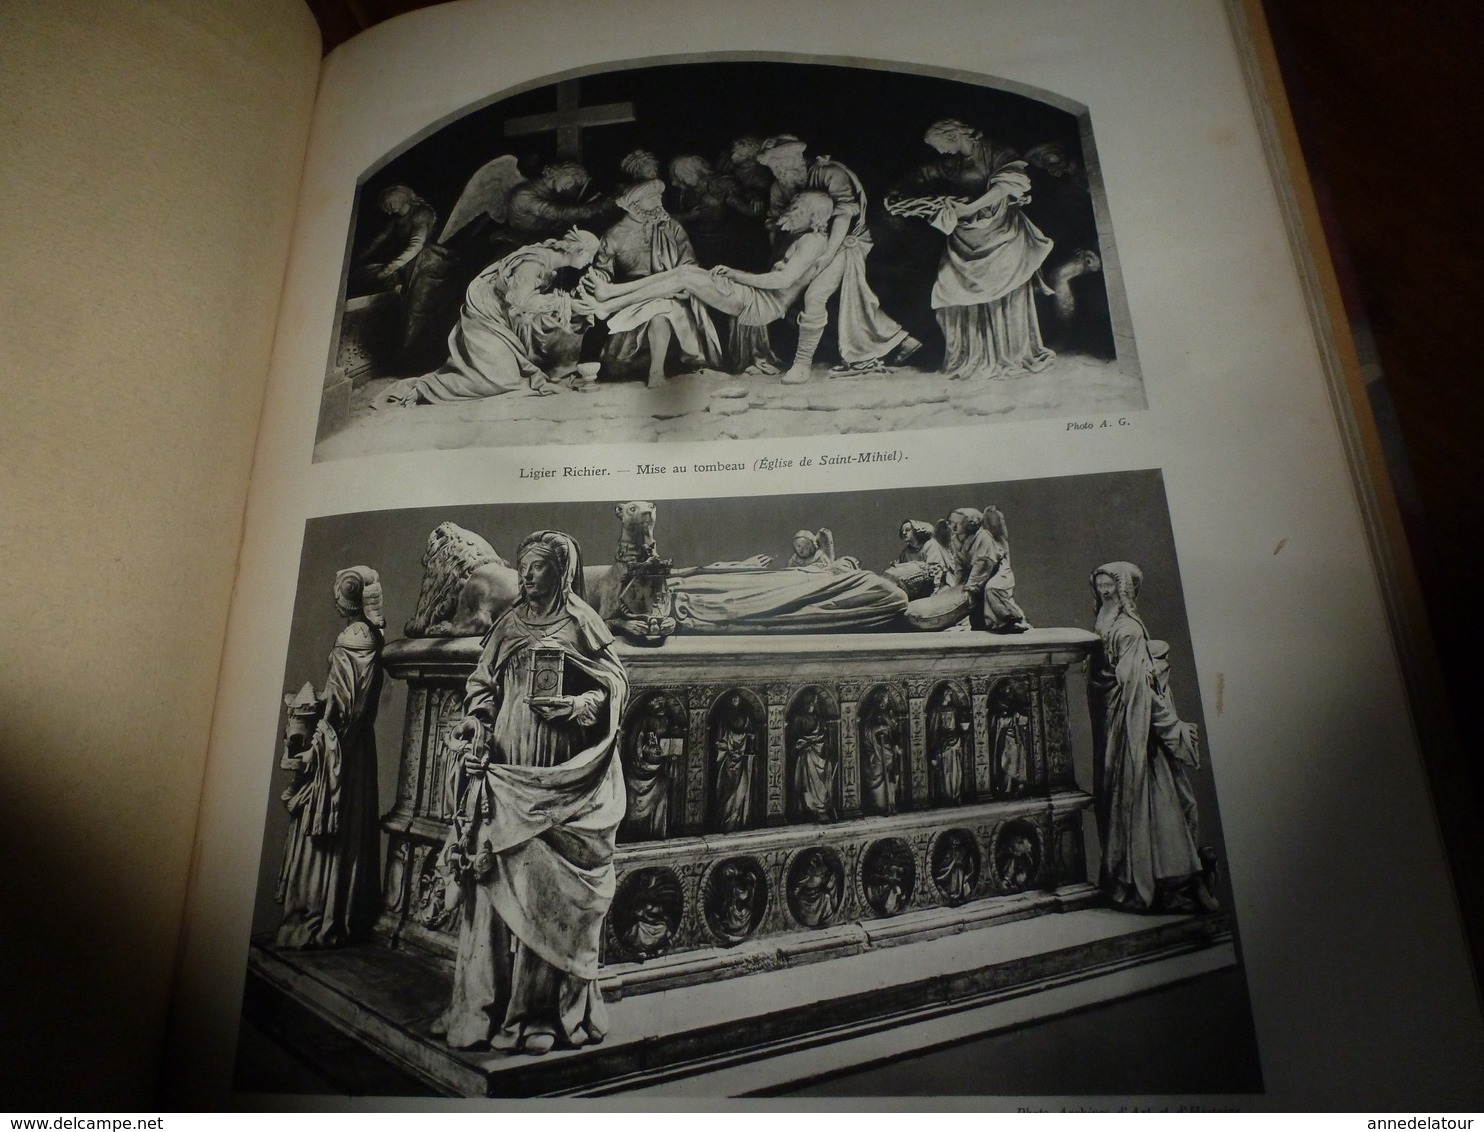 1938 IMPORTANT livre sur L'HISTOIRE de L'ART en :ITALIE au 15e s : En EUROPE au 17e s ,ETC,  tome 3 - nombreuses photos